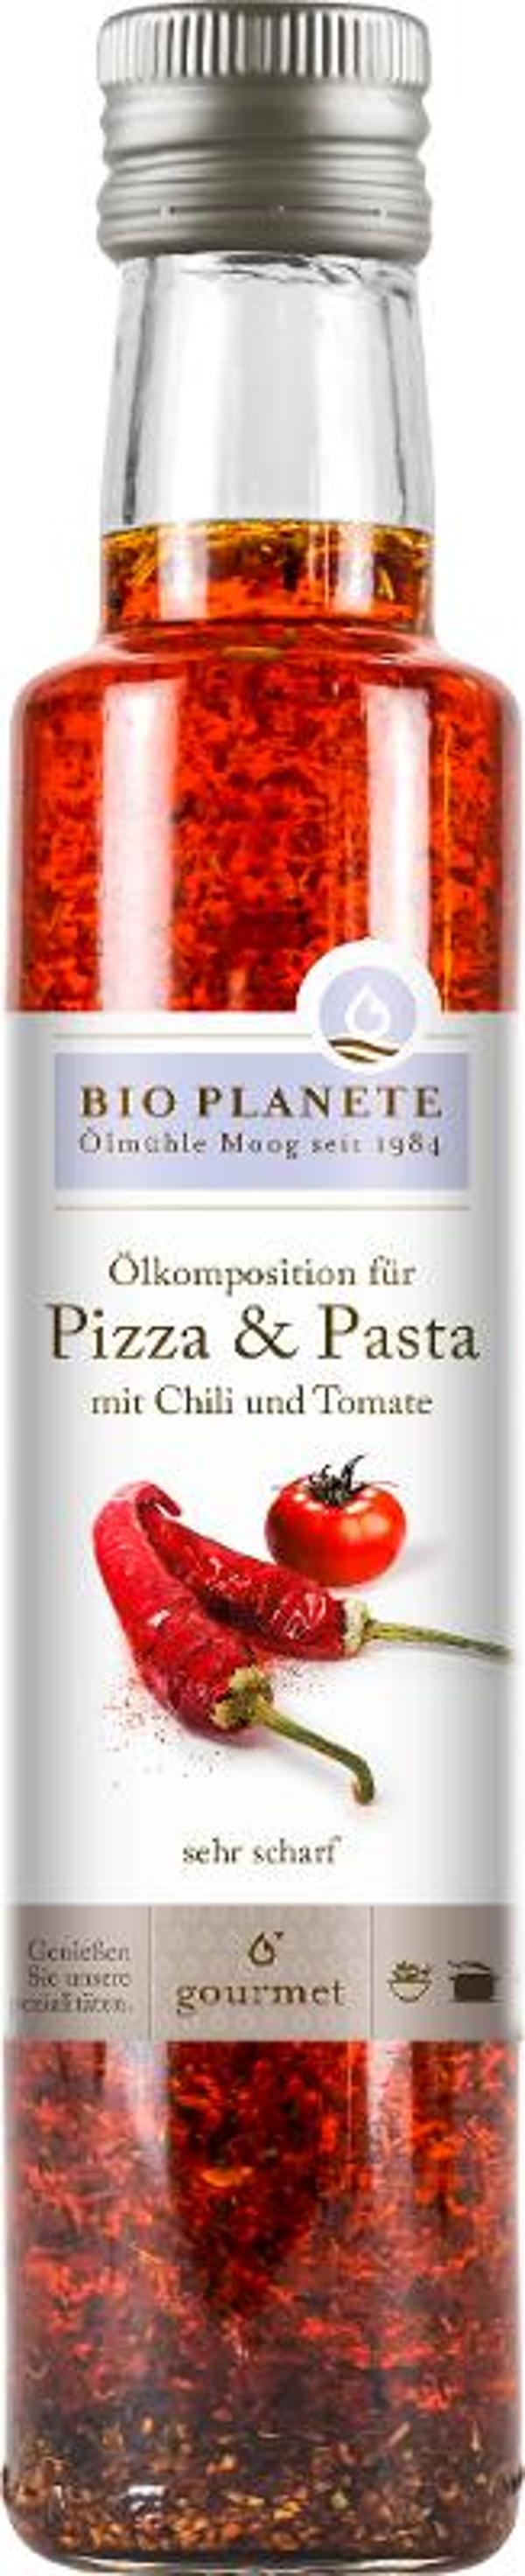 Produktfoto zu Öl mit Chili und Tomate für Pizza und Pasta, 250 ml